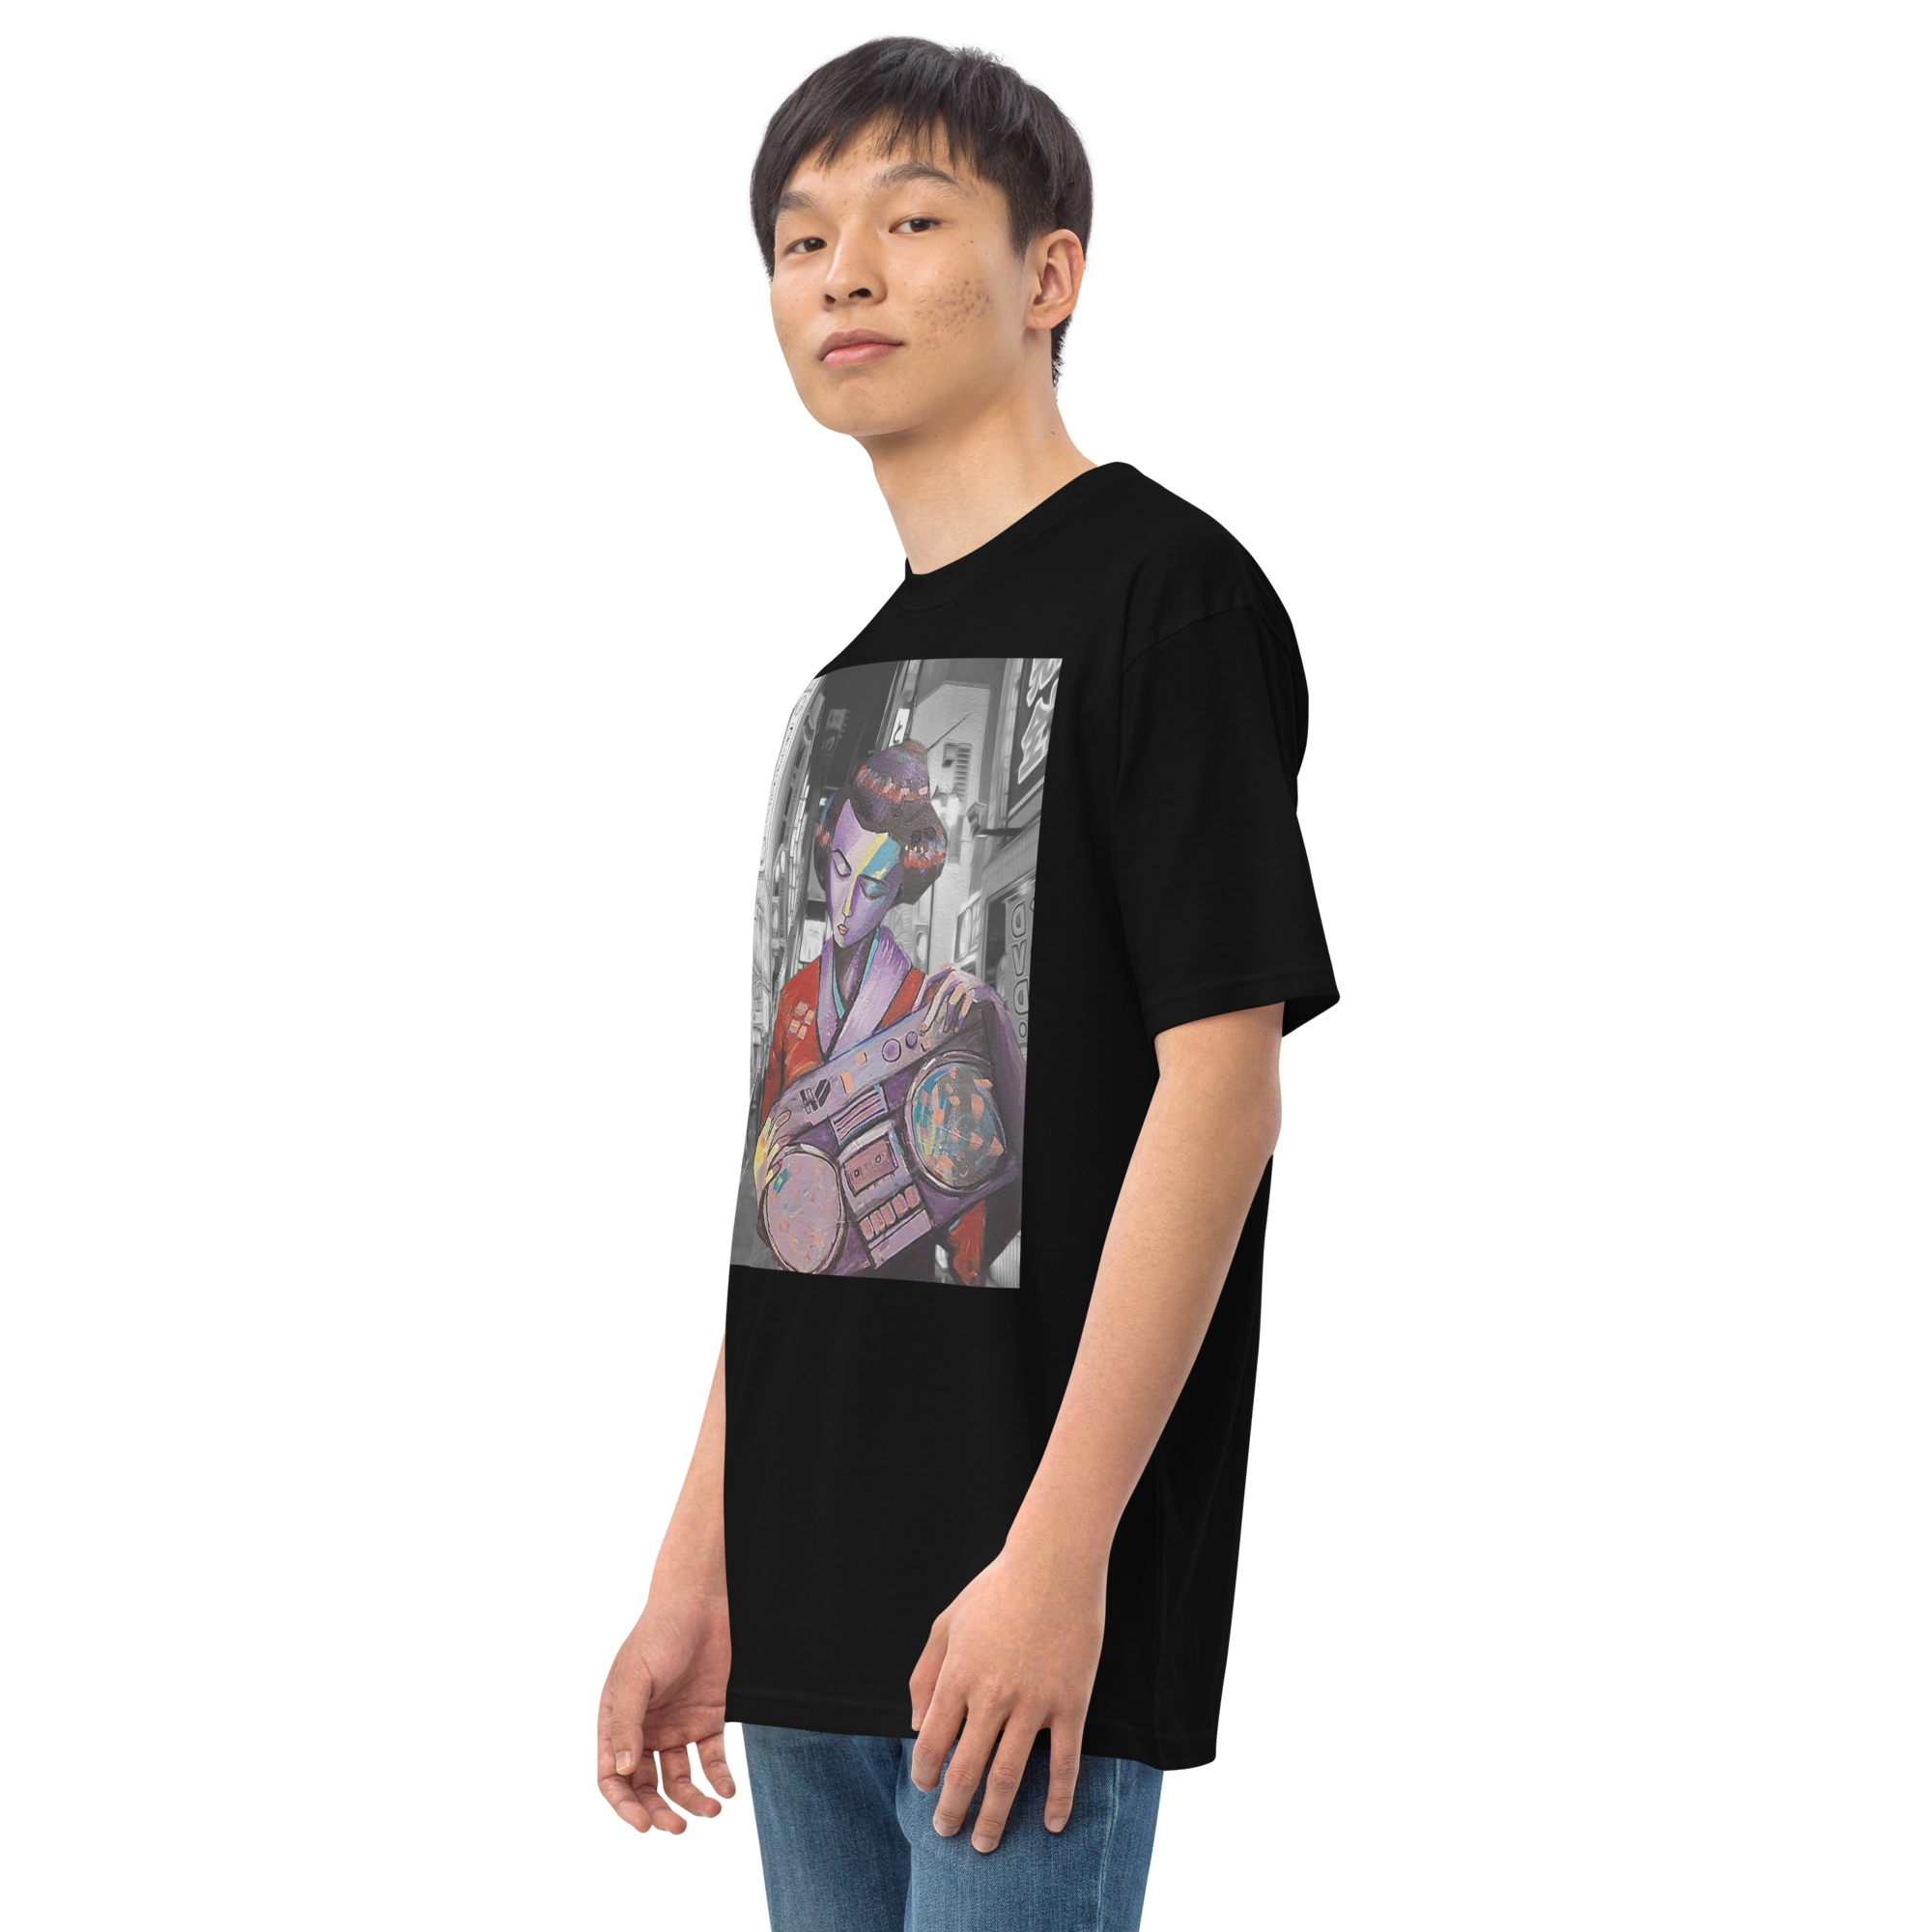 Bento Box Men’s premium heavyweight t-shirt